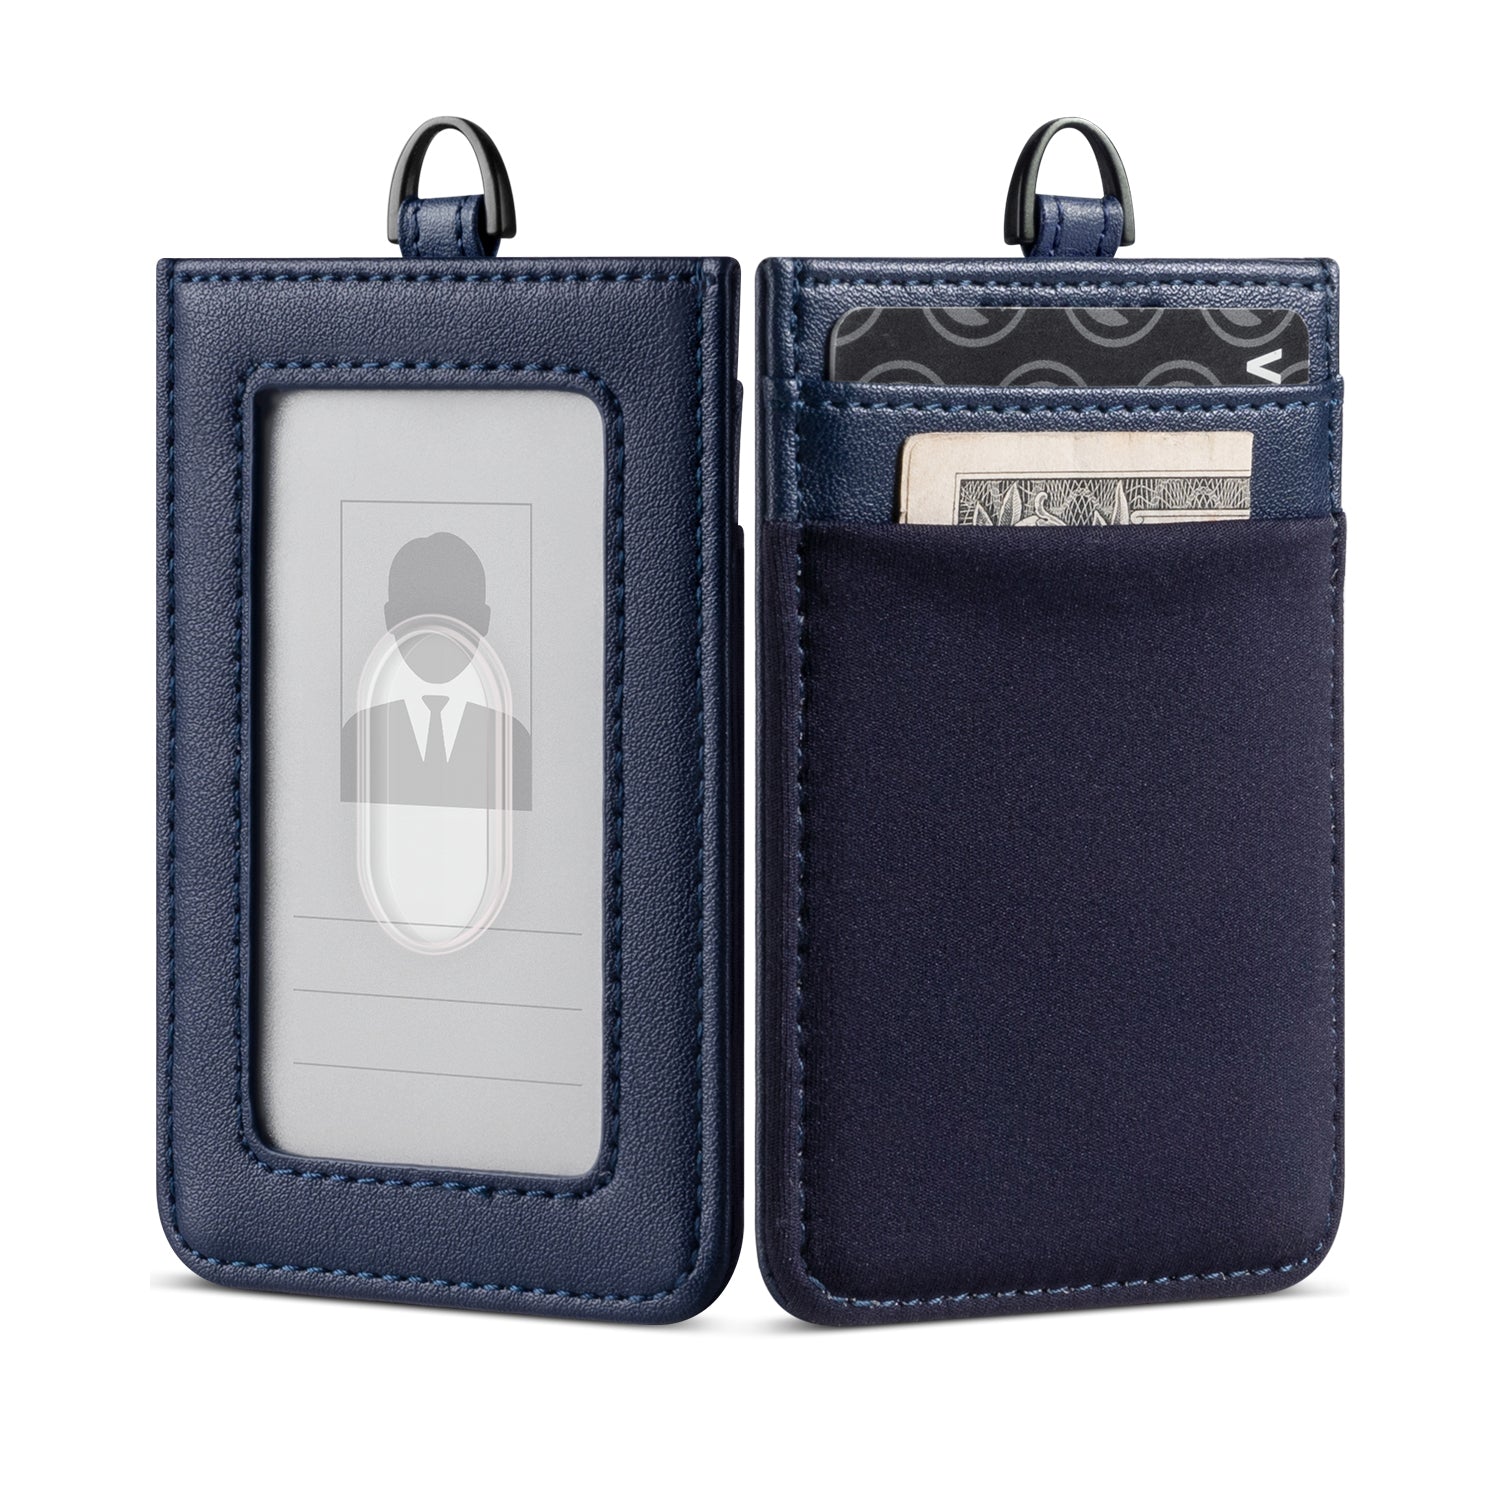  Slim Badge Holder Wallet, PU Leather Vertical Name